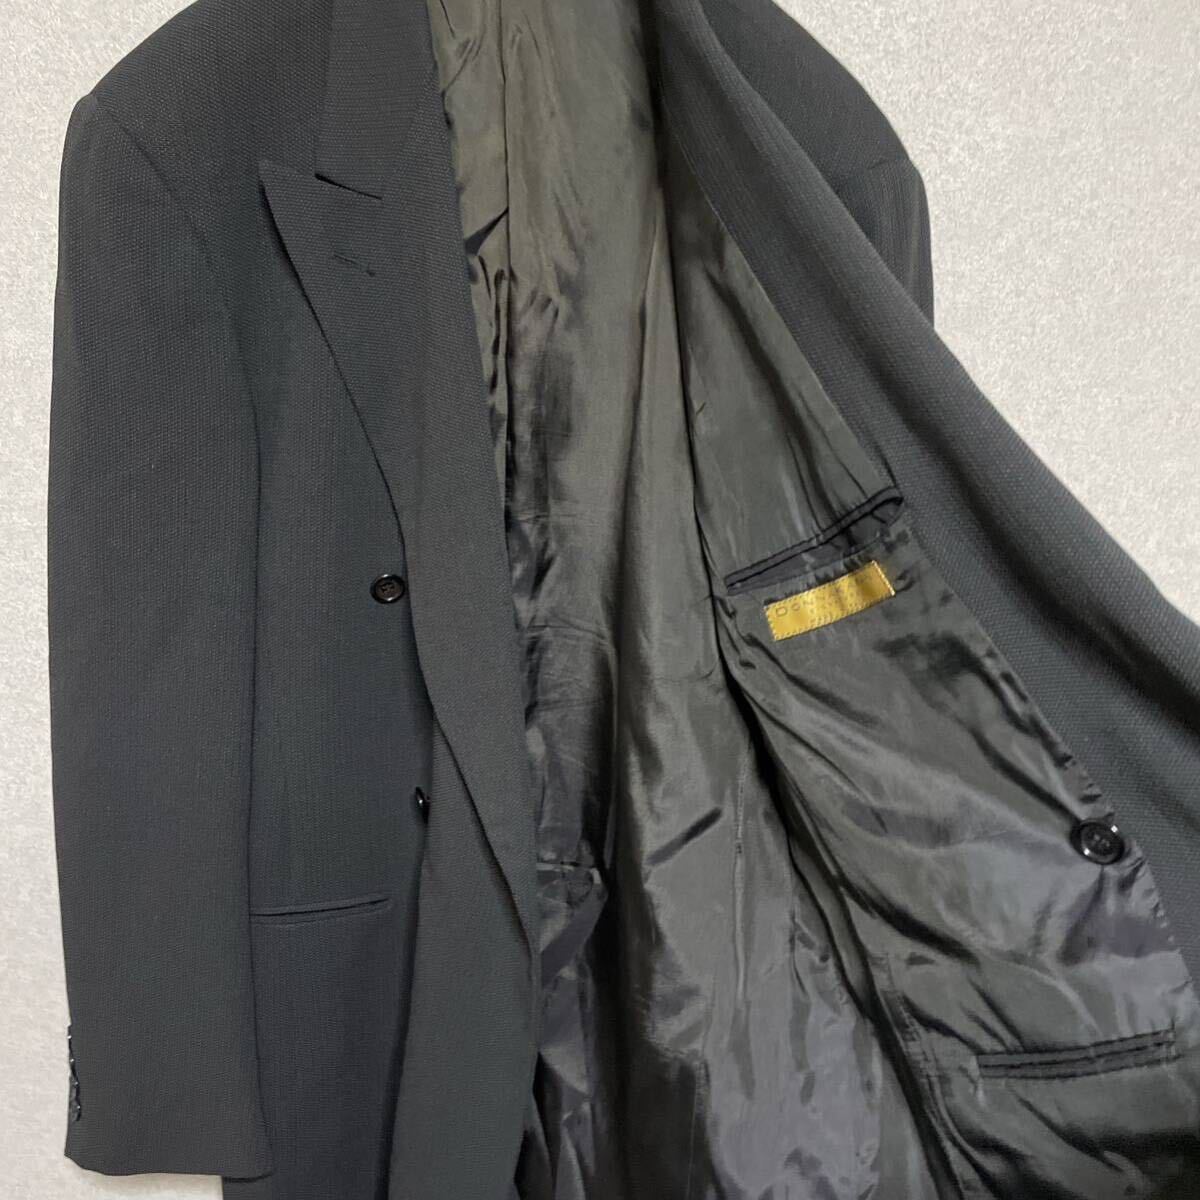 【 редко встречающийся  ,  большой  размер  】...　 двойной   костюм   Италия  пр-во  　... пиджак  ...  серый 　90s  винтажный  